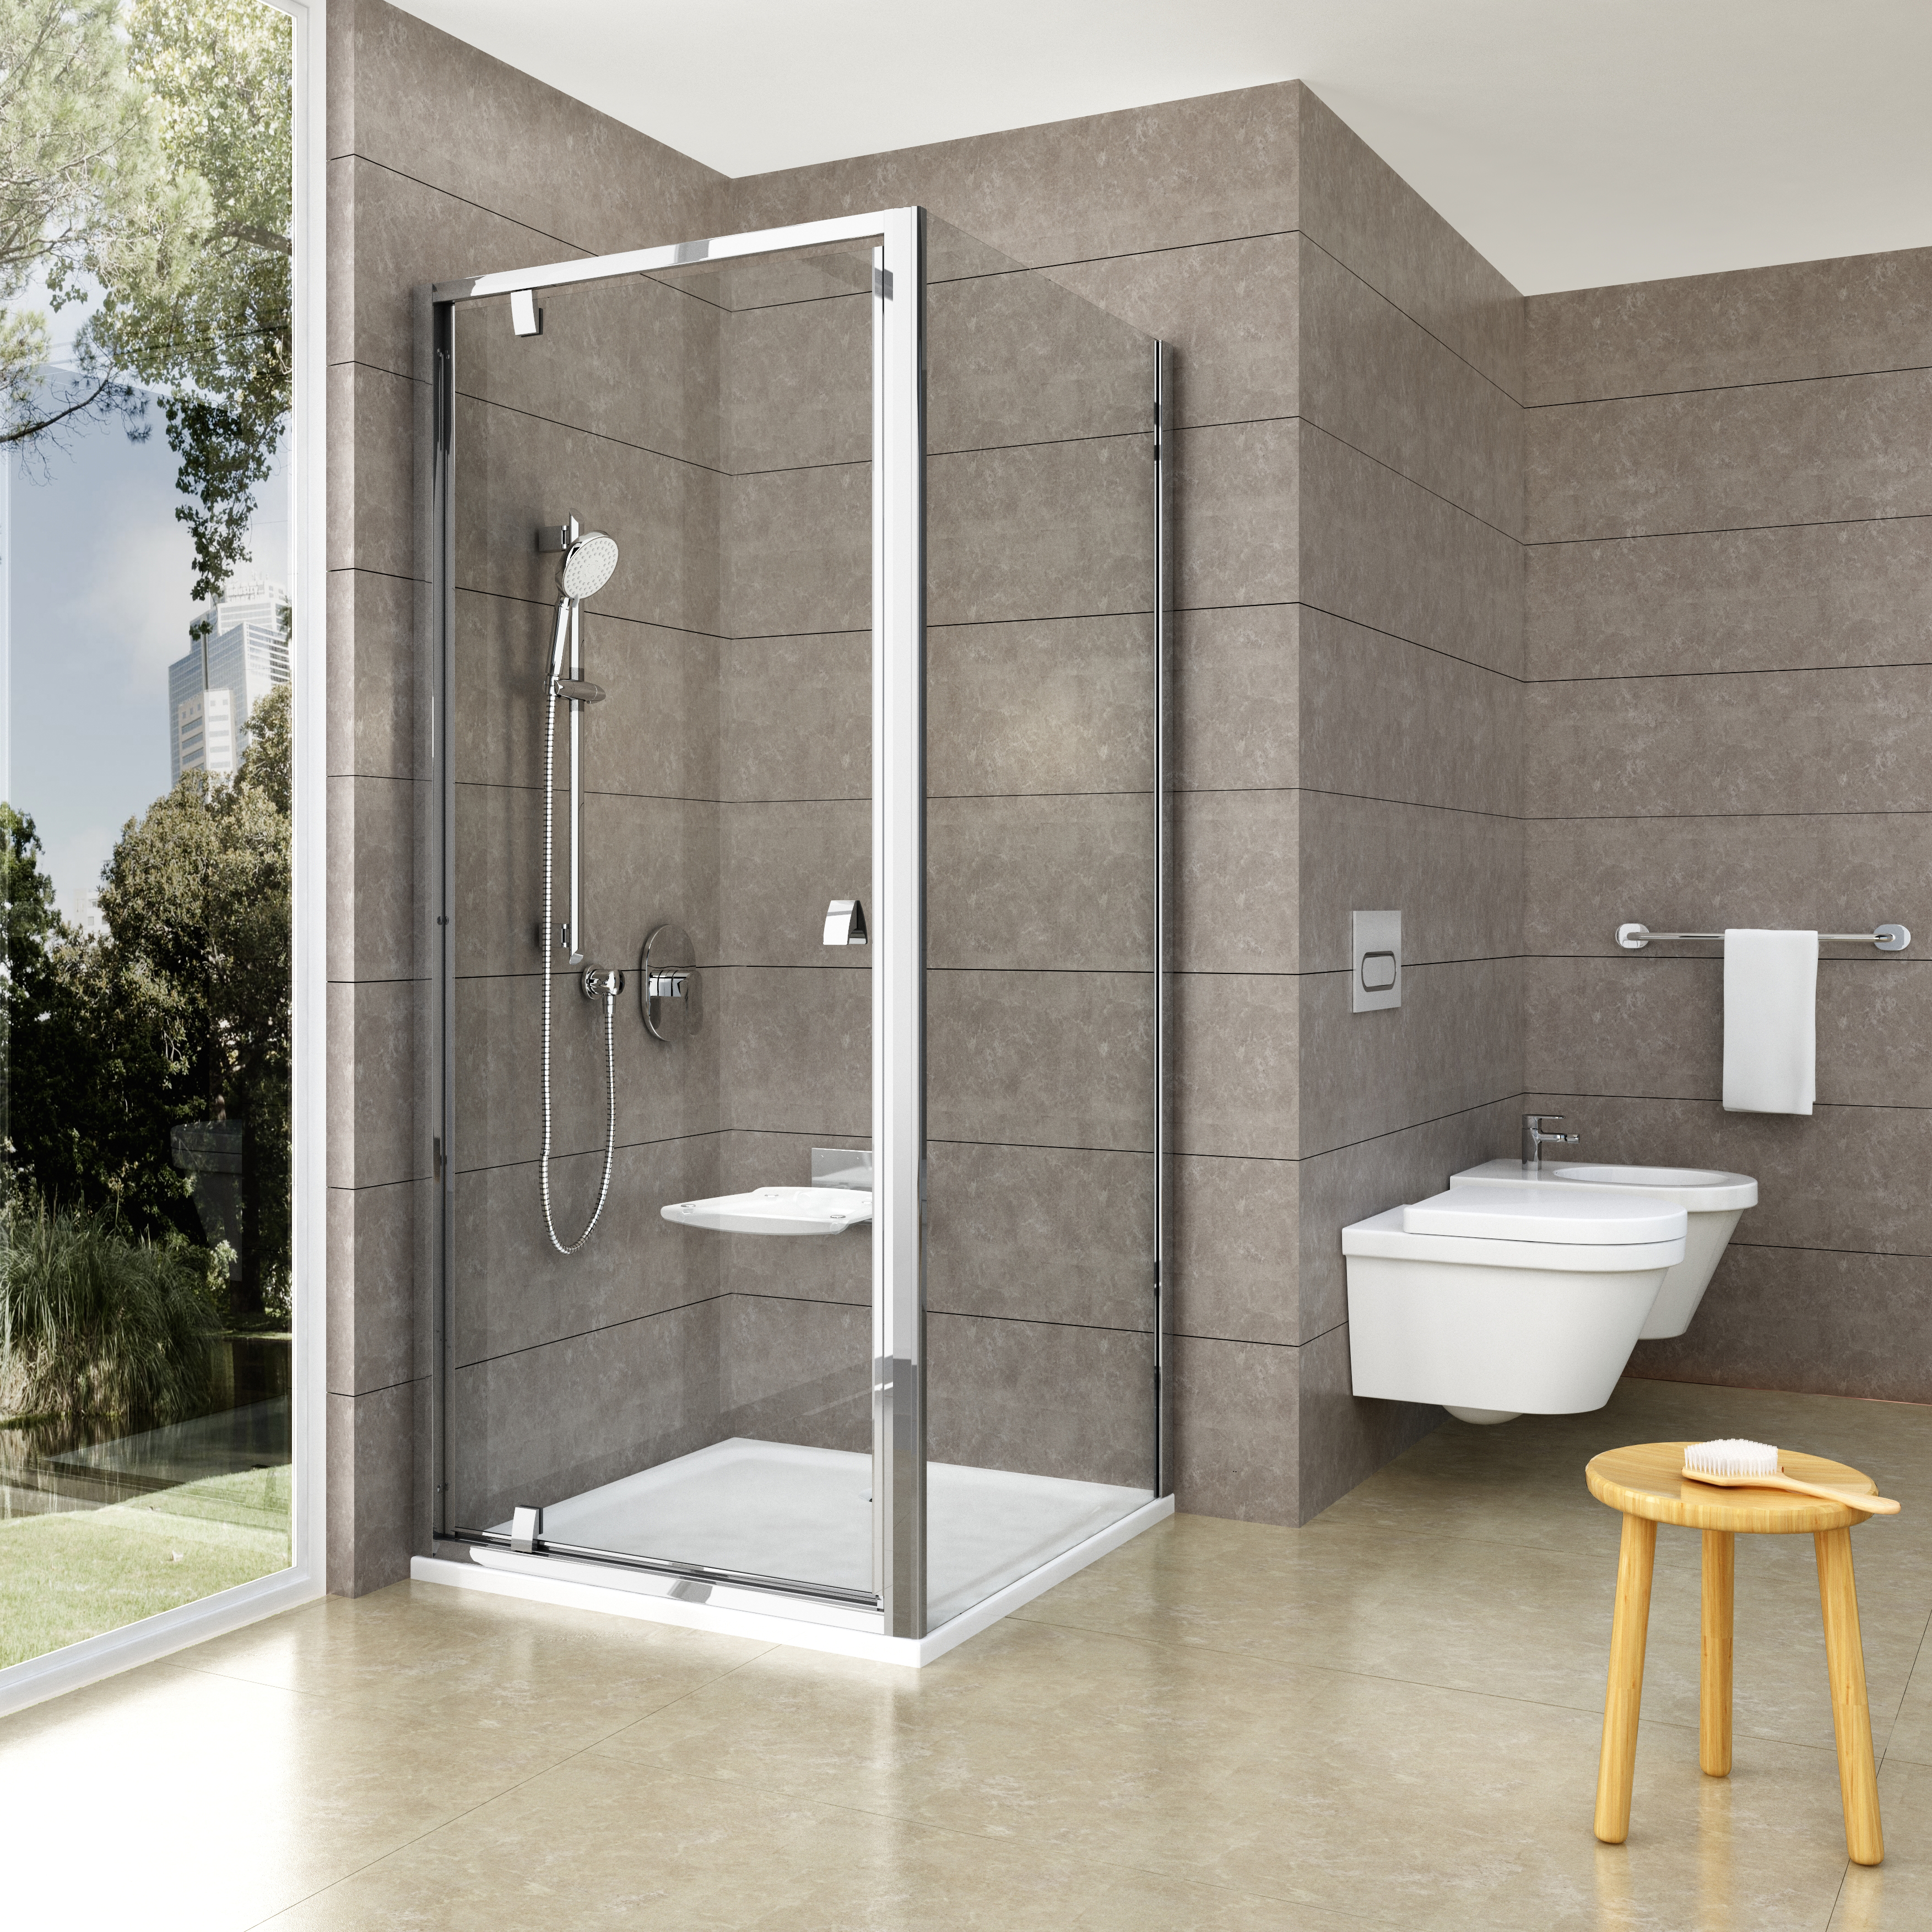 A RAVAK zuhanykabin minden fürdőszobába tökéletes megoldás